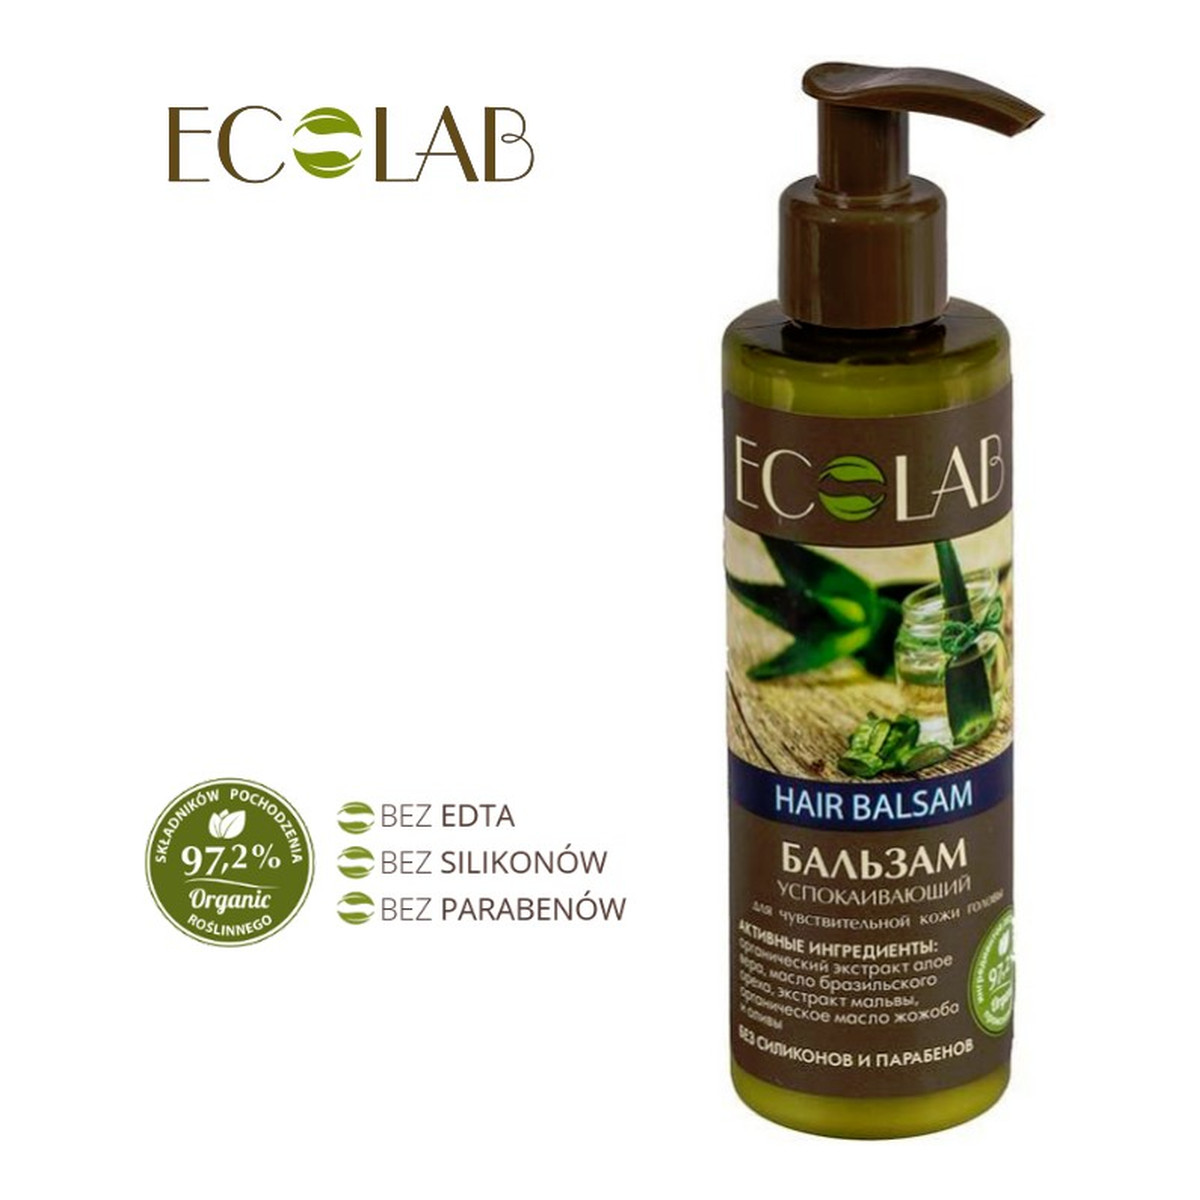 Ecolab Ec Laboratorie Delikatny balsam do wrażliwej skóry głowy z aloesem 200ml